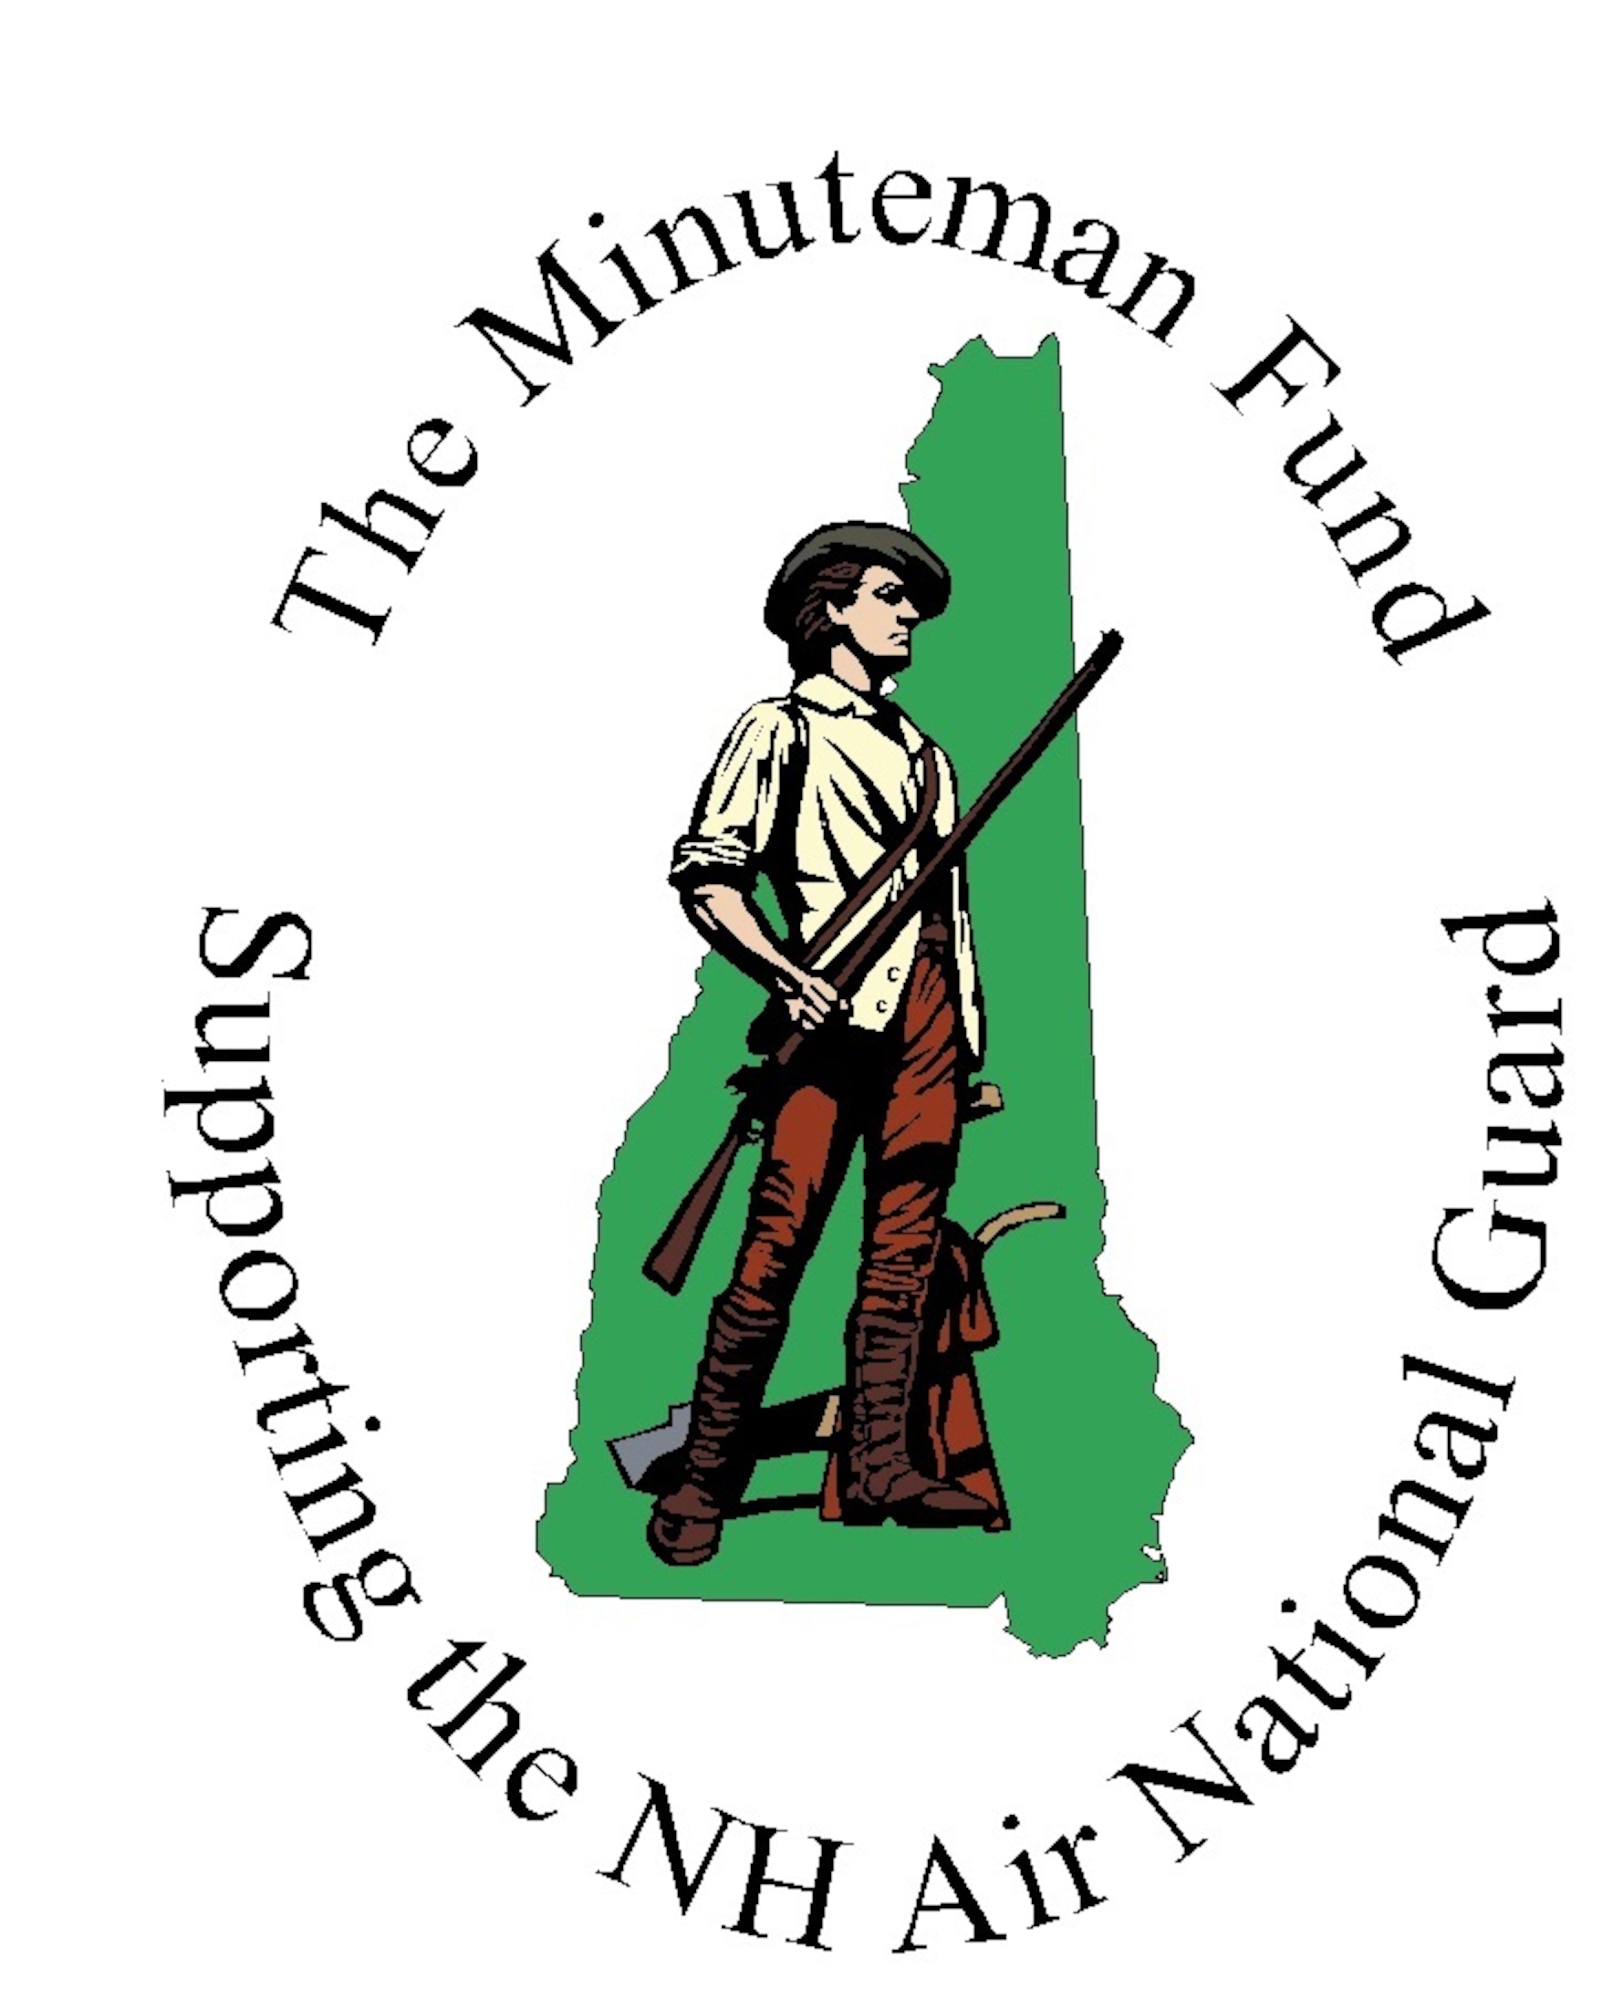 The Minuteman Fund 